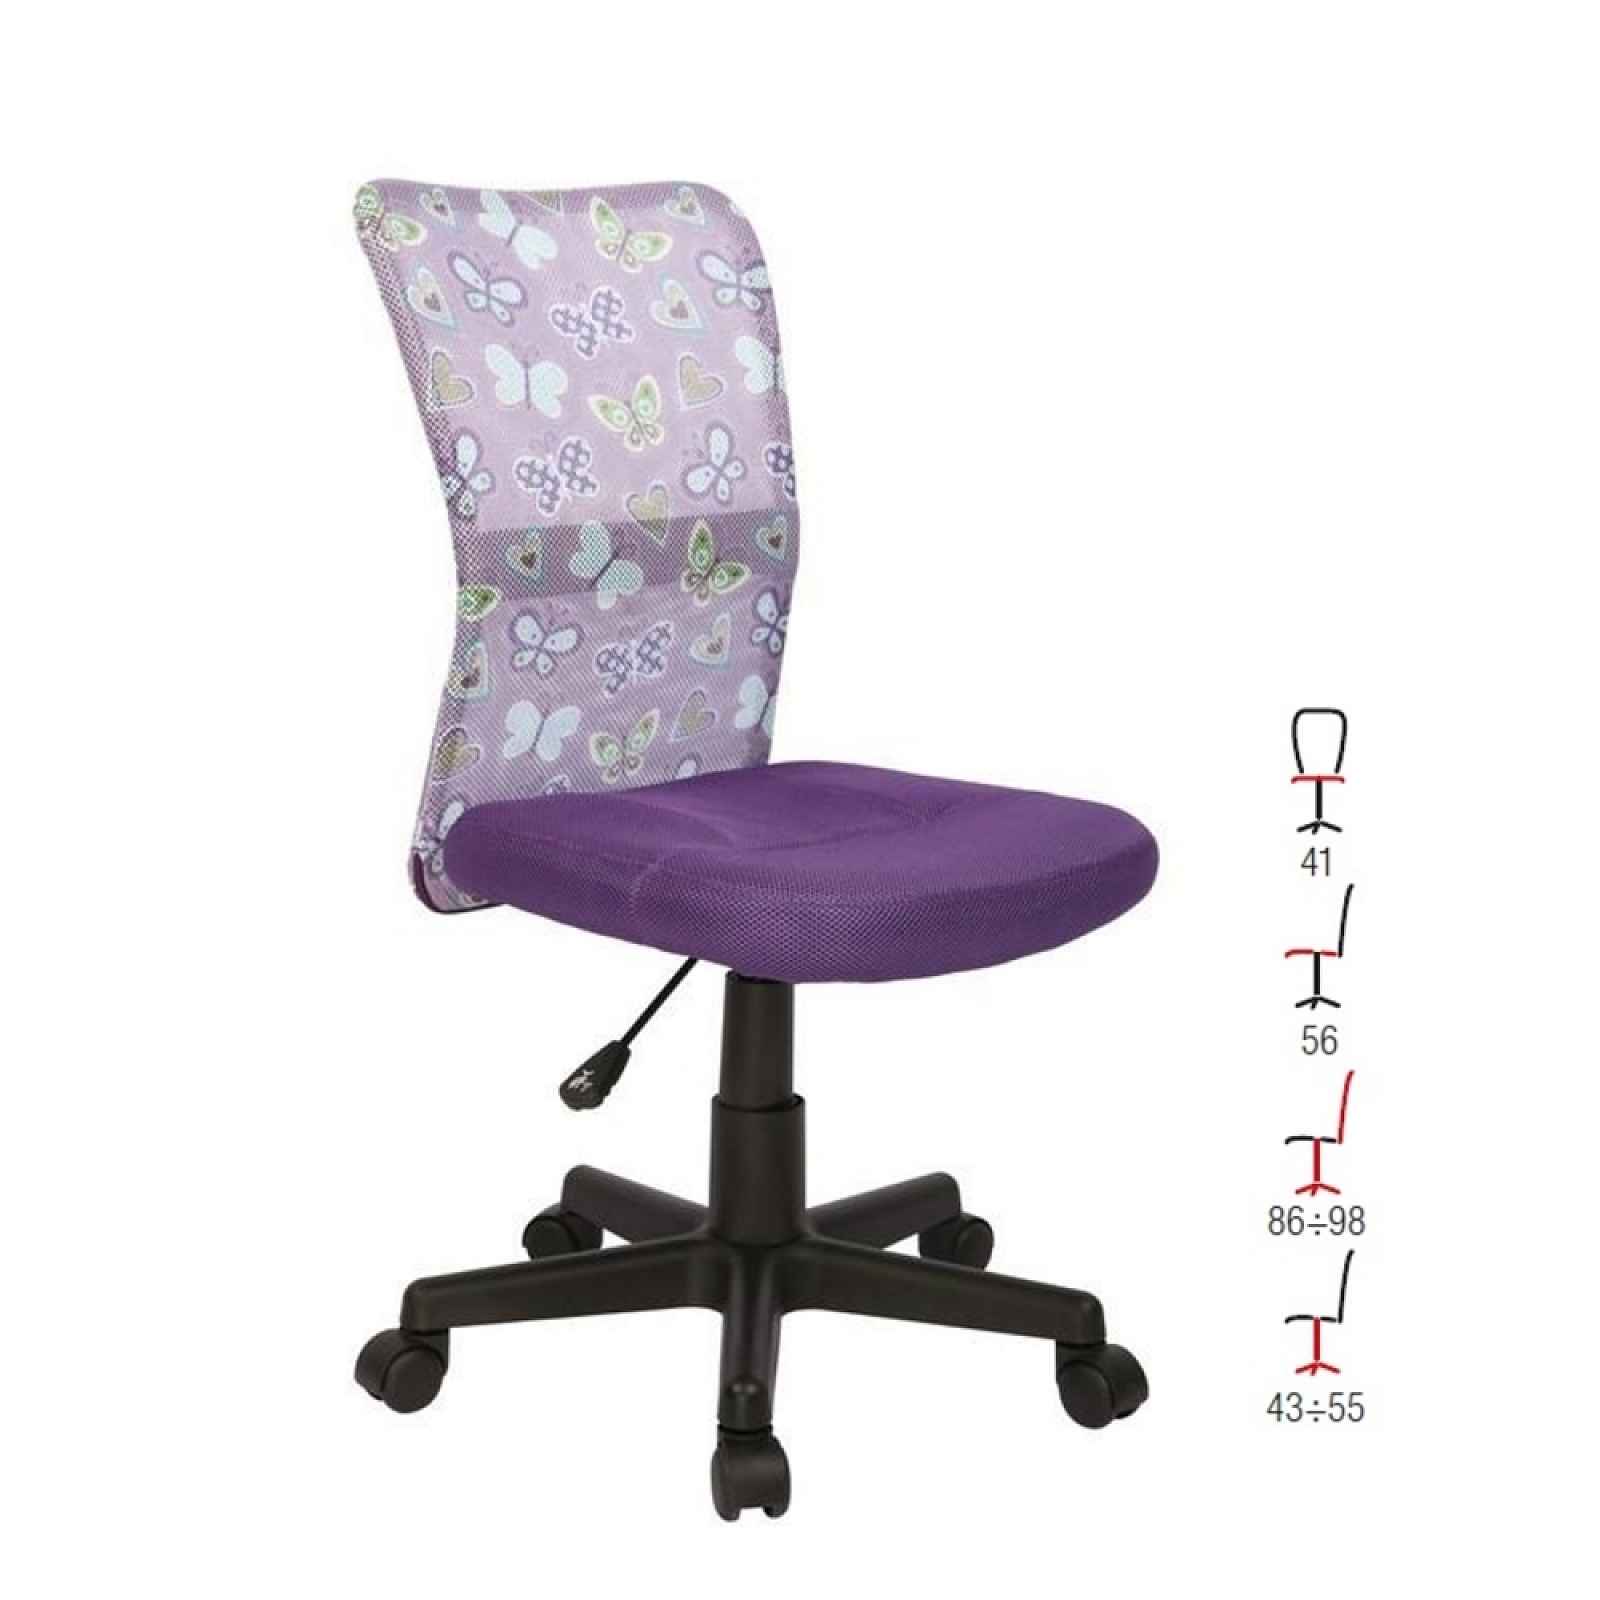 Dětská židle DINGO, fialová